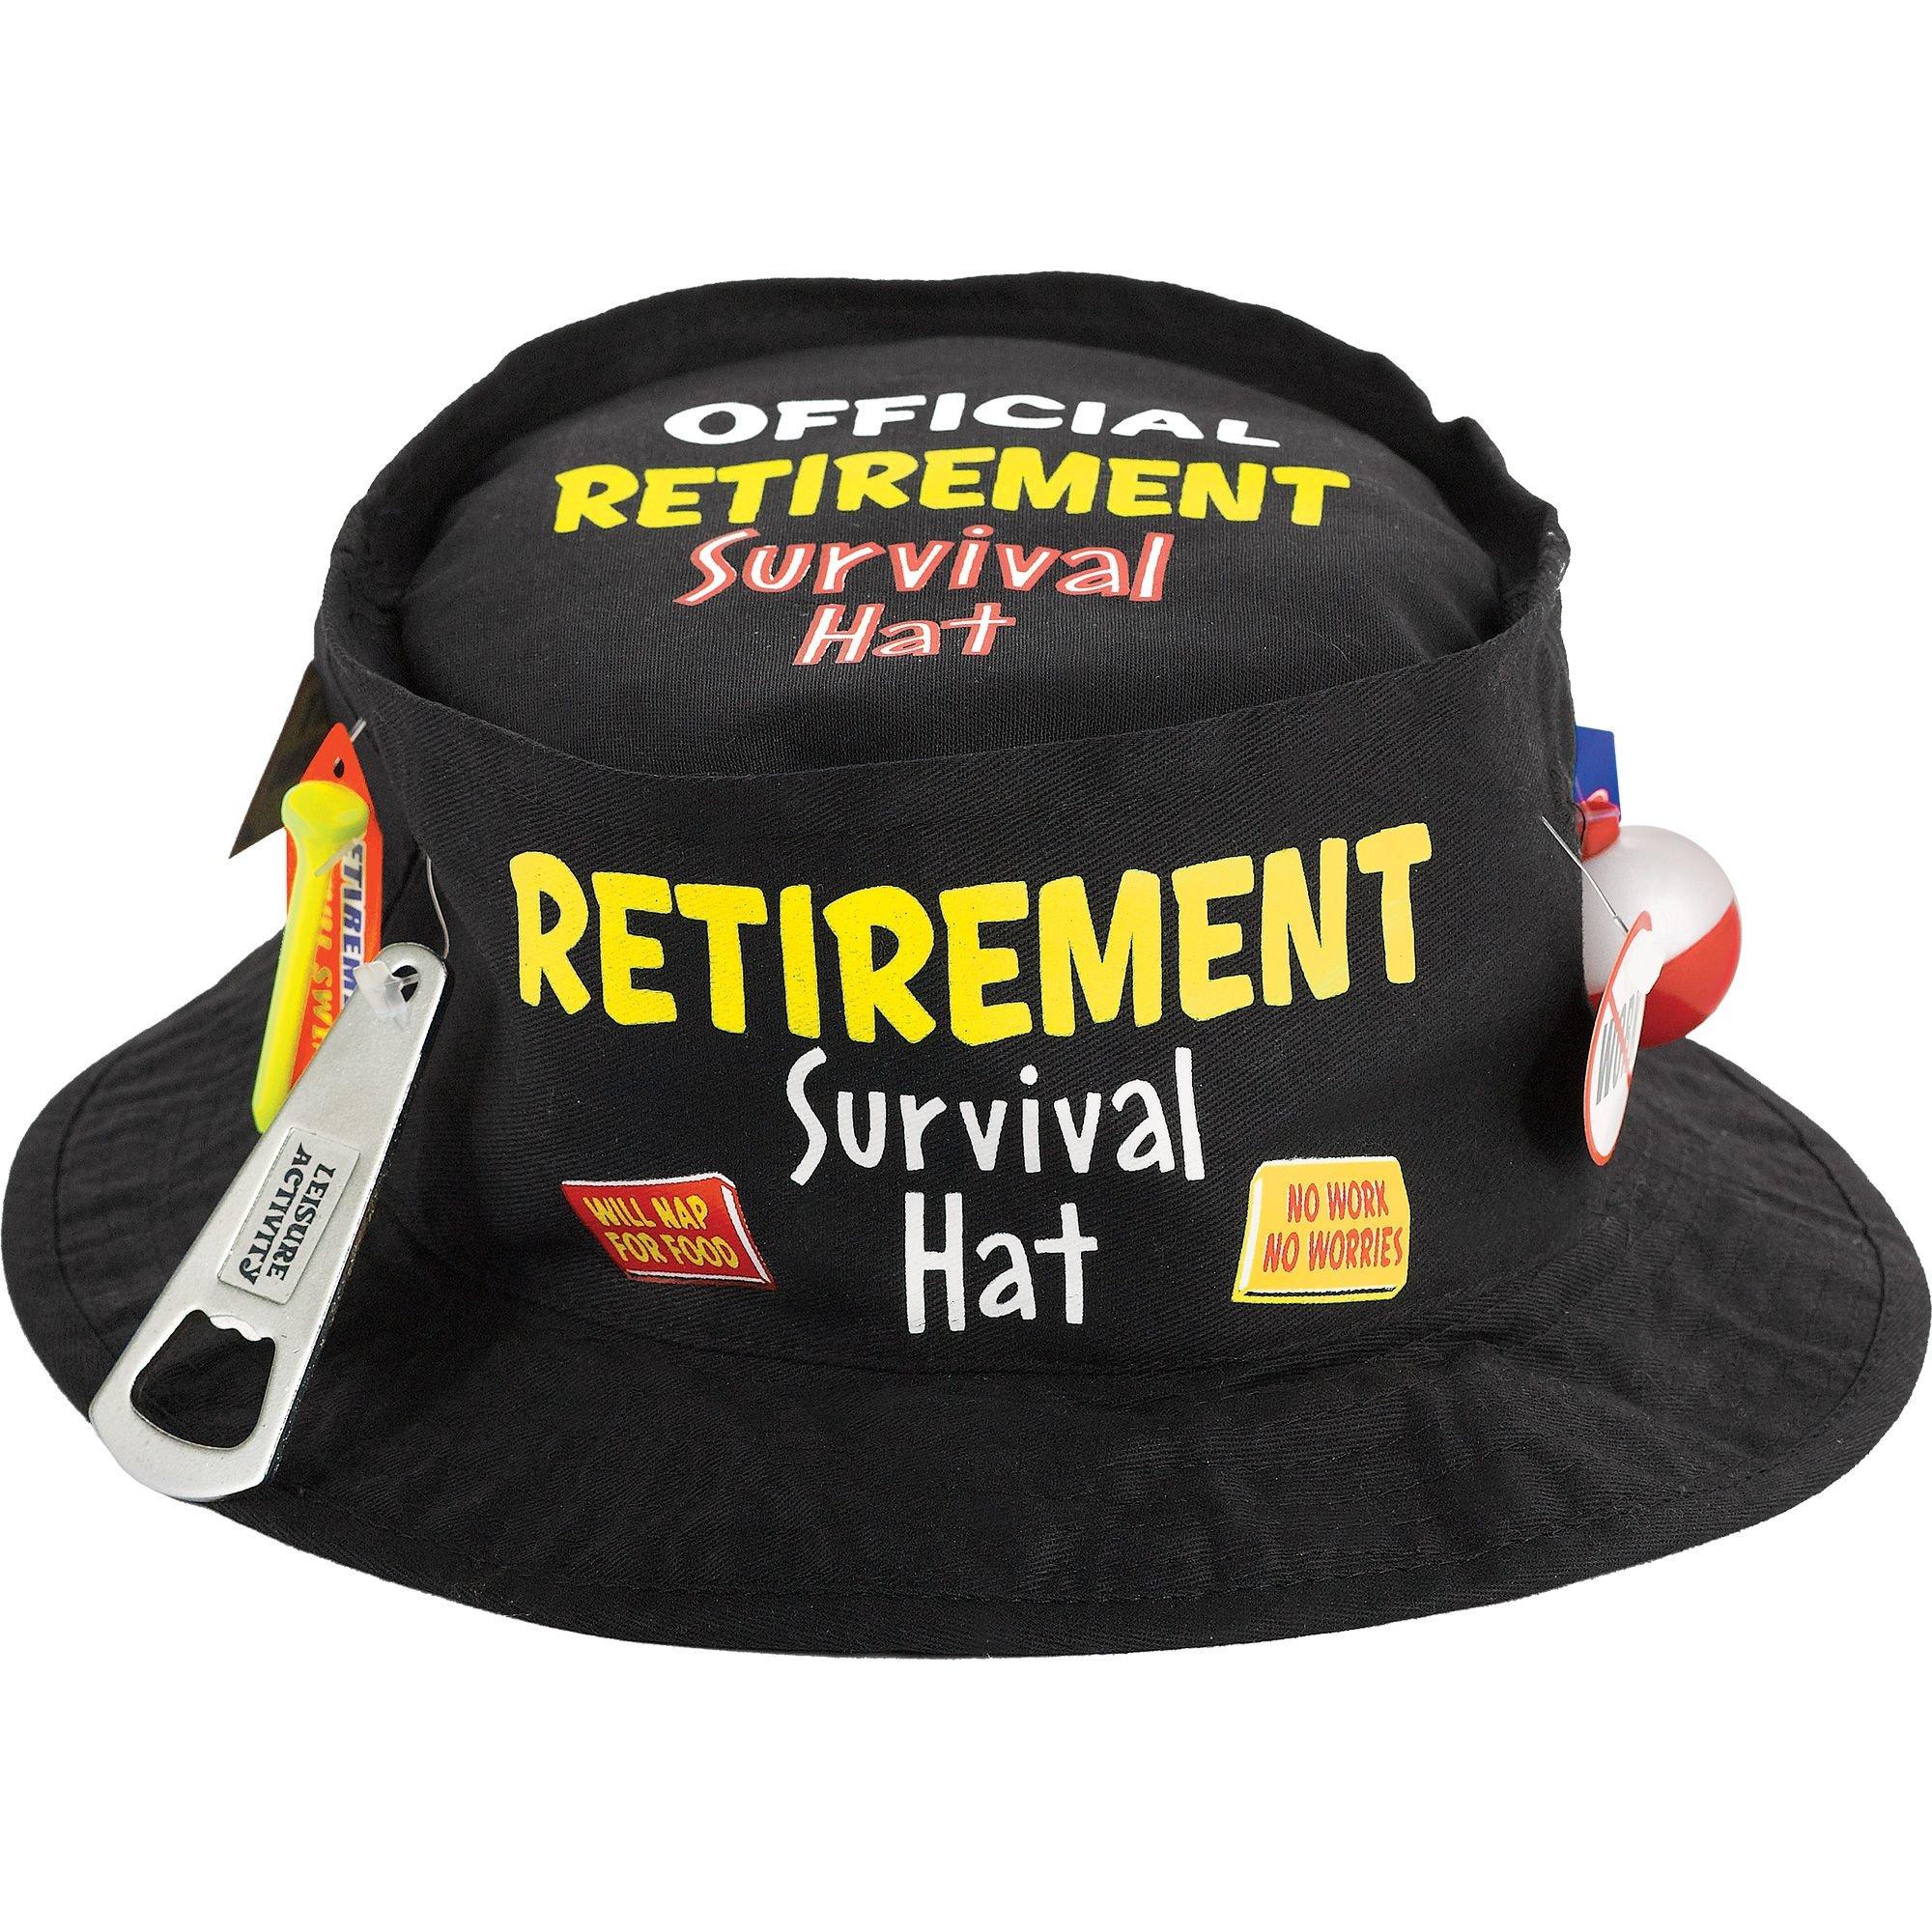 Retirement Survival Hat